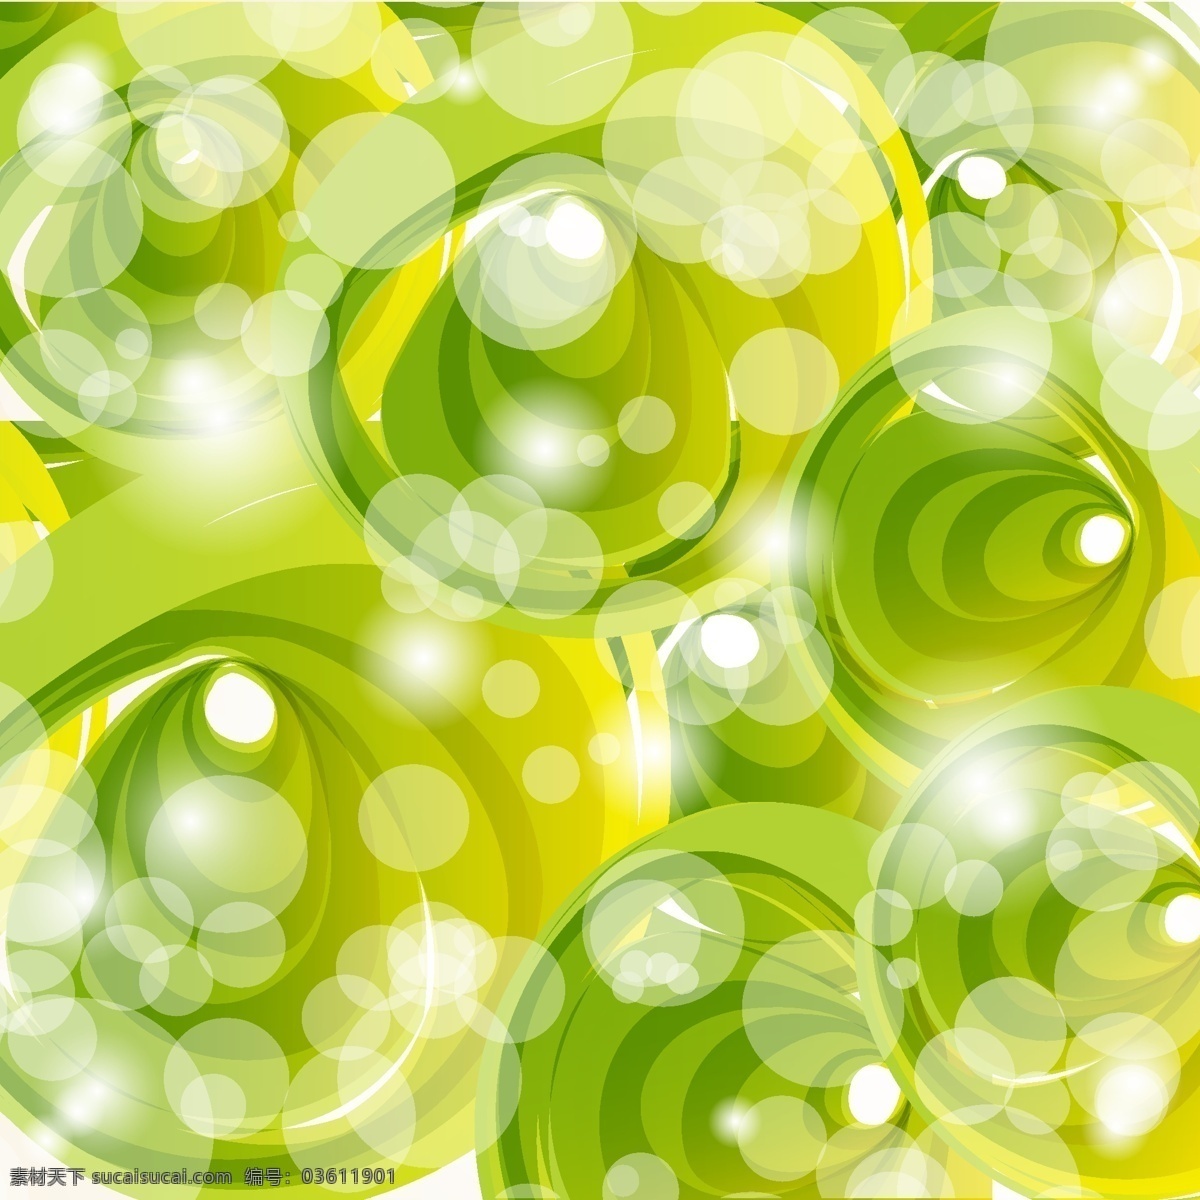 矢量 光晕 绿叶 图形 背景图片素材 光点 旋转 炫光 叶子 矢量图 花纹花边